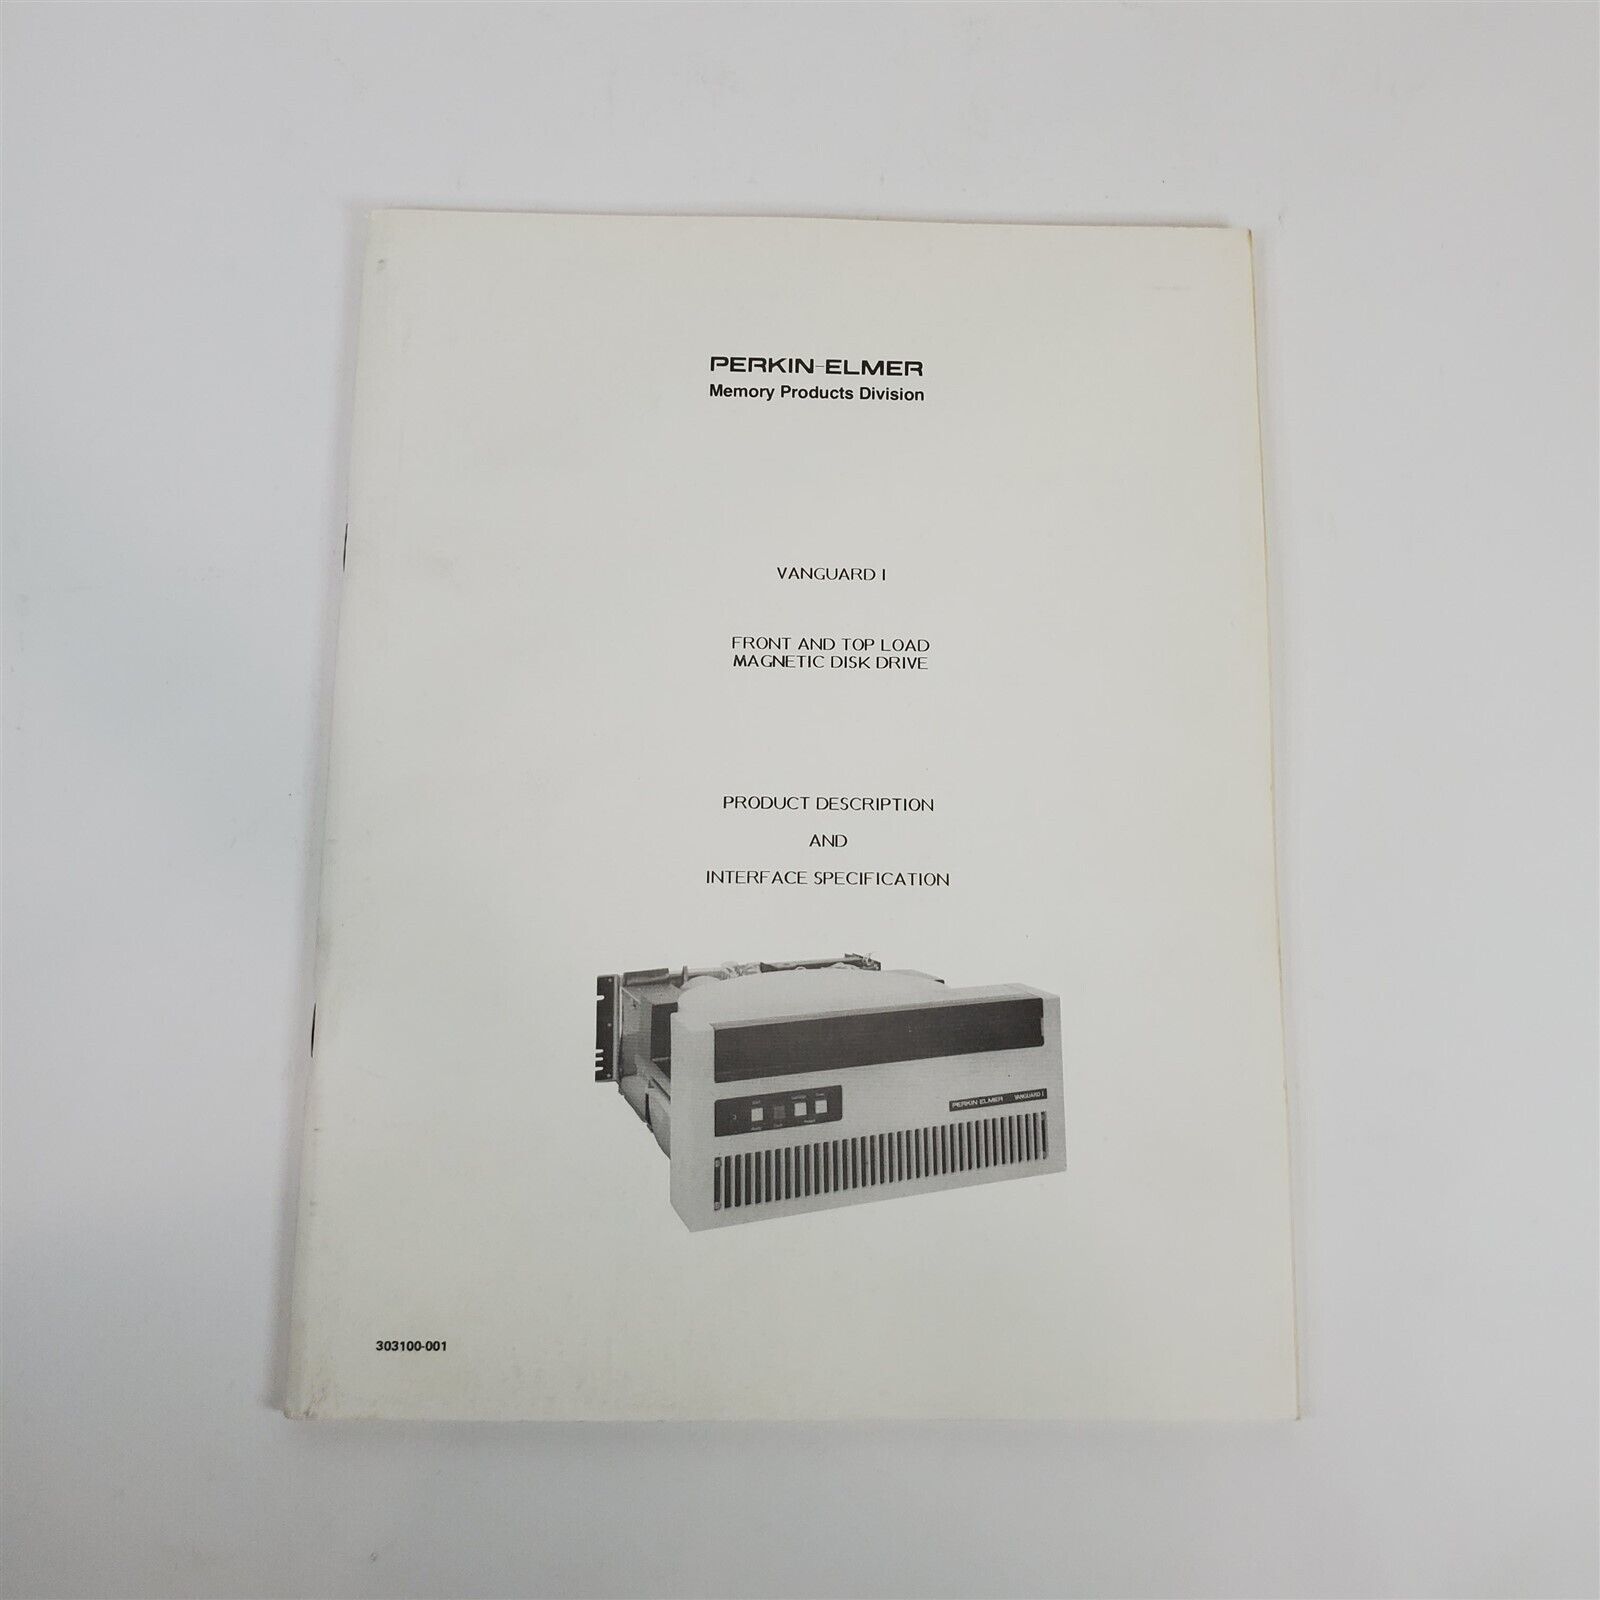 VTG Original Perkin Elmer Vanguard I 5/10/20 MB Disk Drive Product Specs Manual